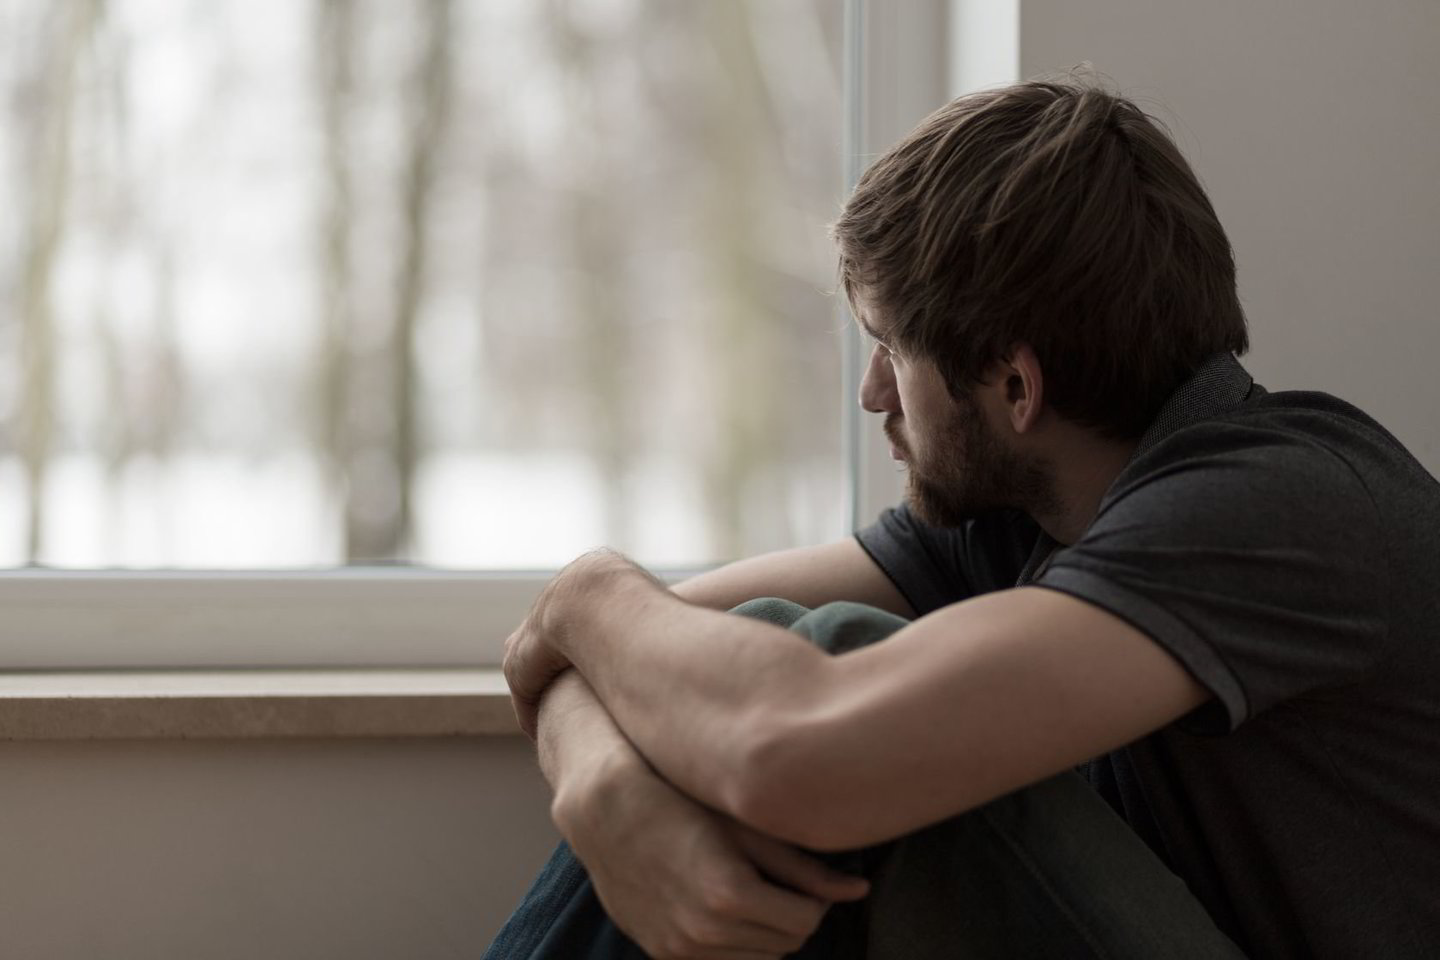  Esminiai depresijos simptomai gali būti liūdna nuotaika, sumažėjusi energija ar aktyvumas.<br> 123rf.com nuotr.